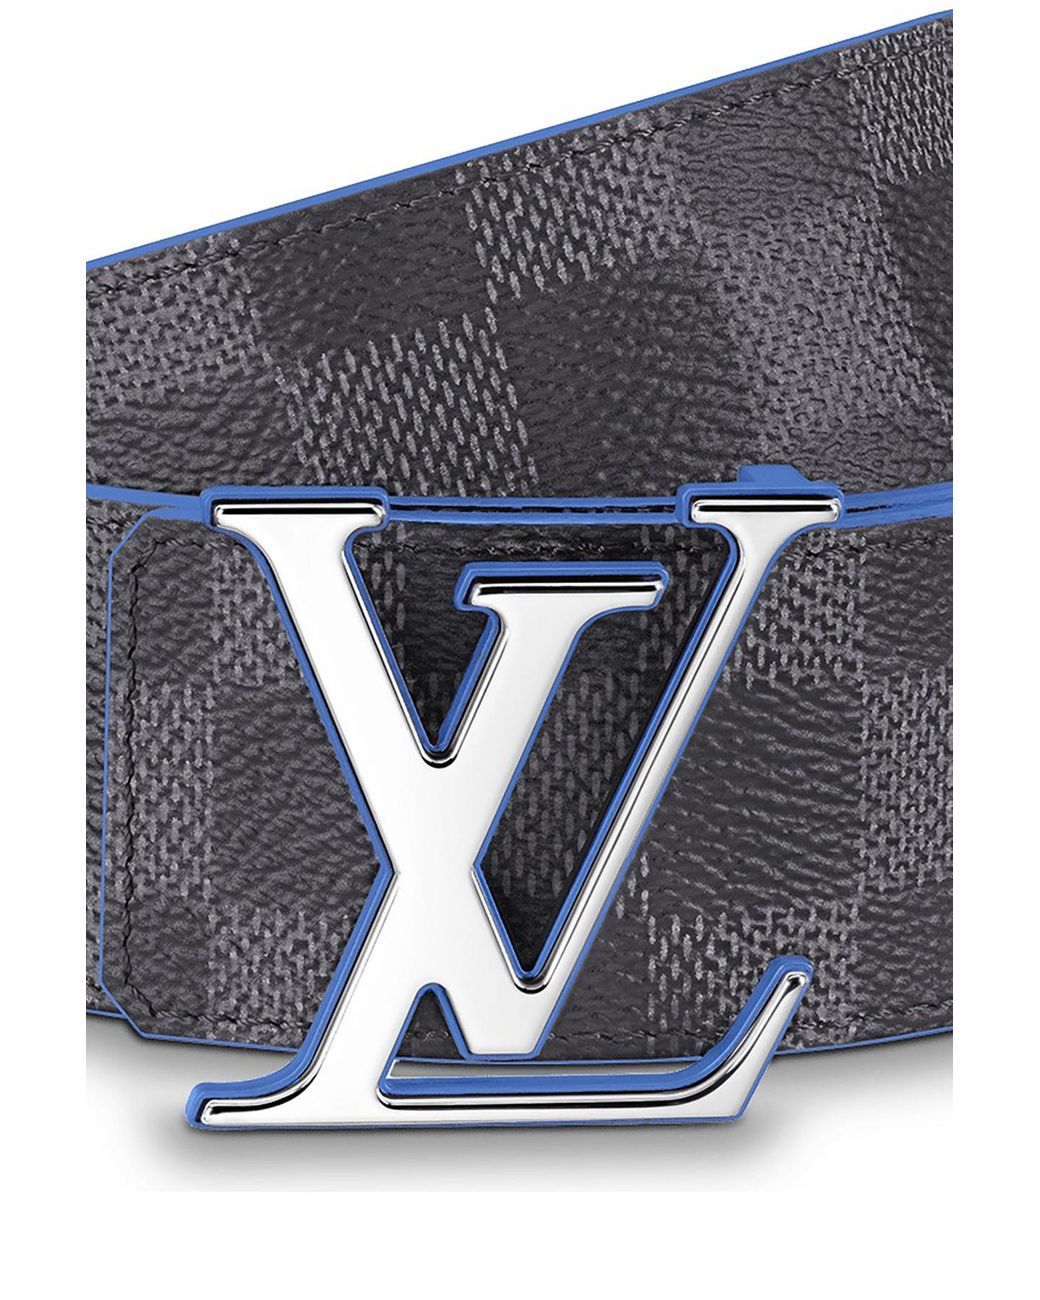 Louis Vuitton Monogram Canvas Lv Initiales 40mm Belt Blue